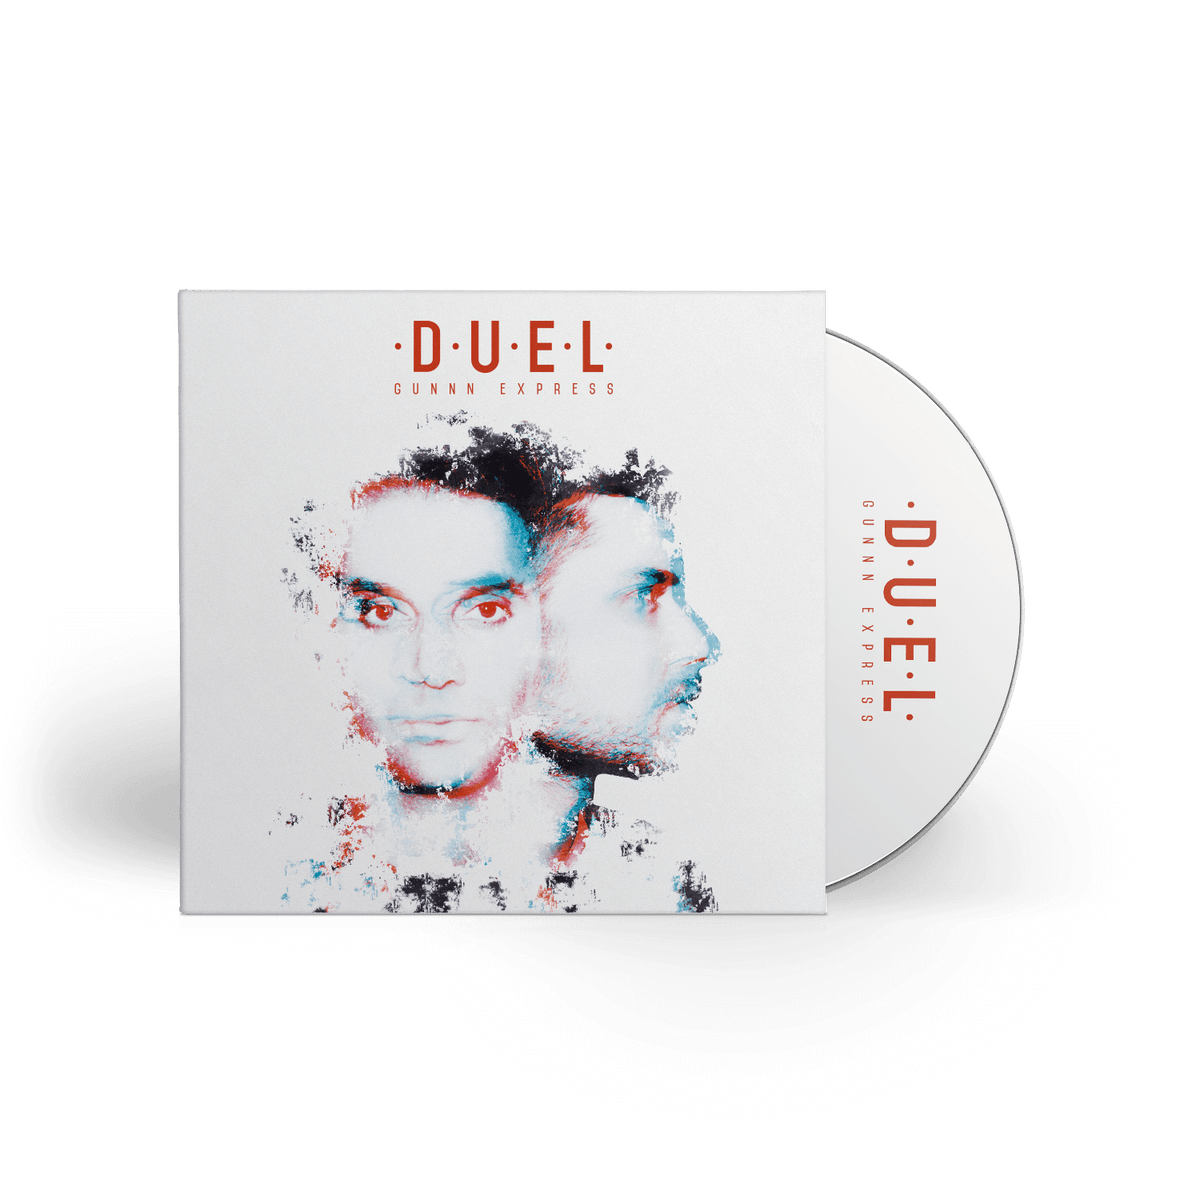 Duel - Gunnn Express - CD Digipack